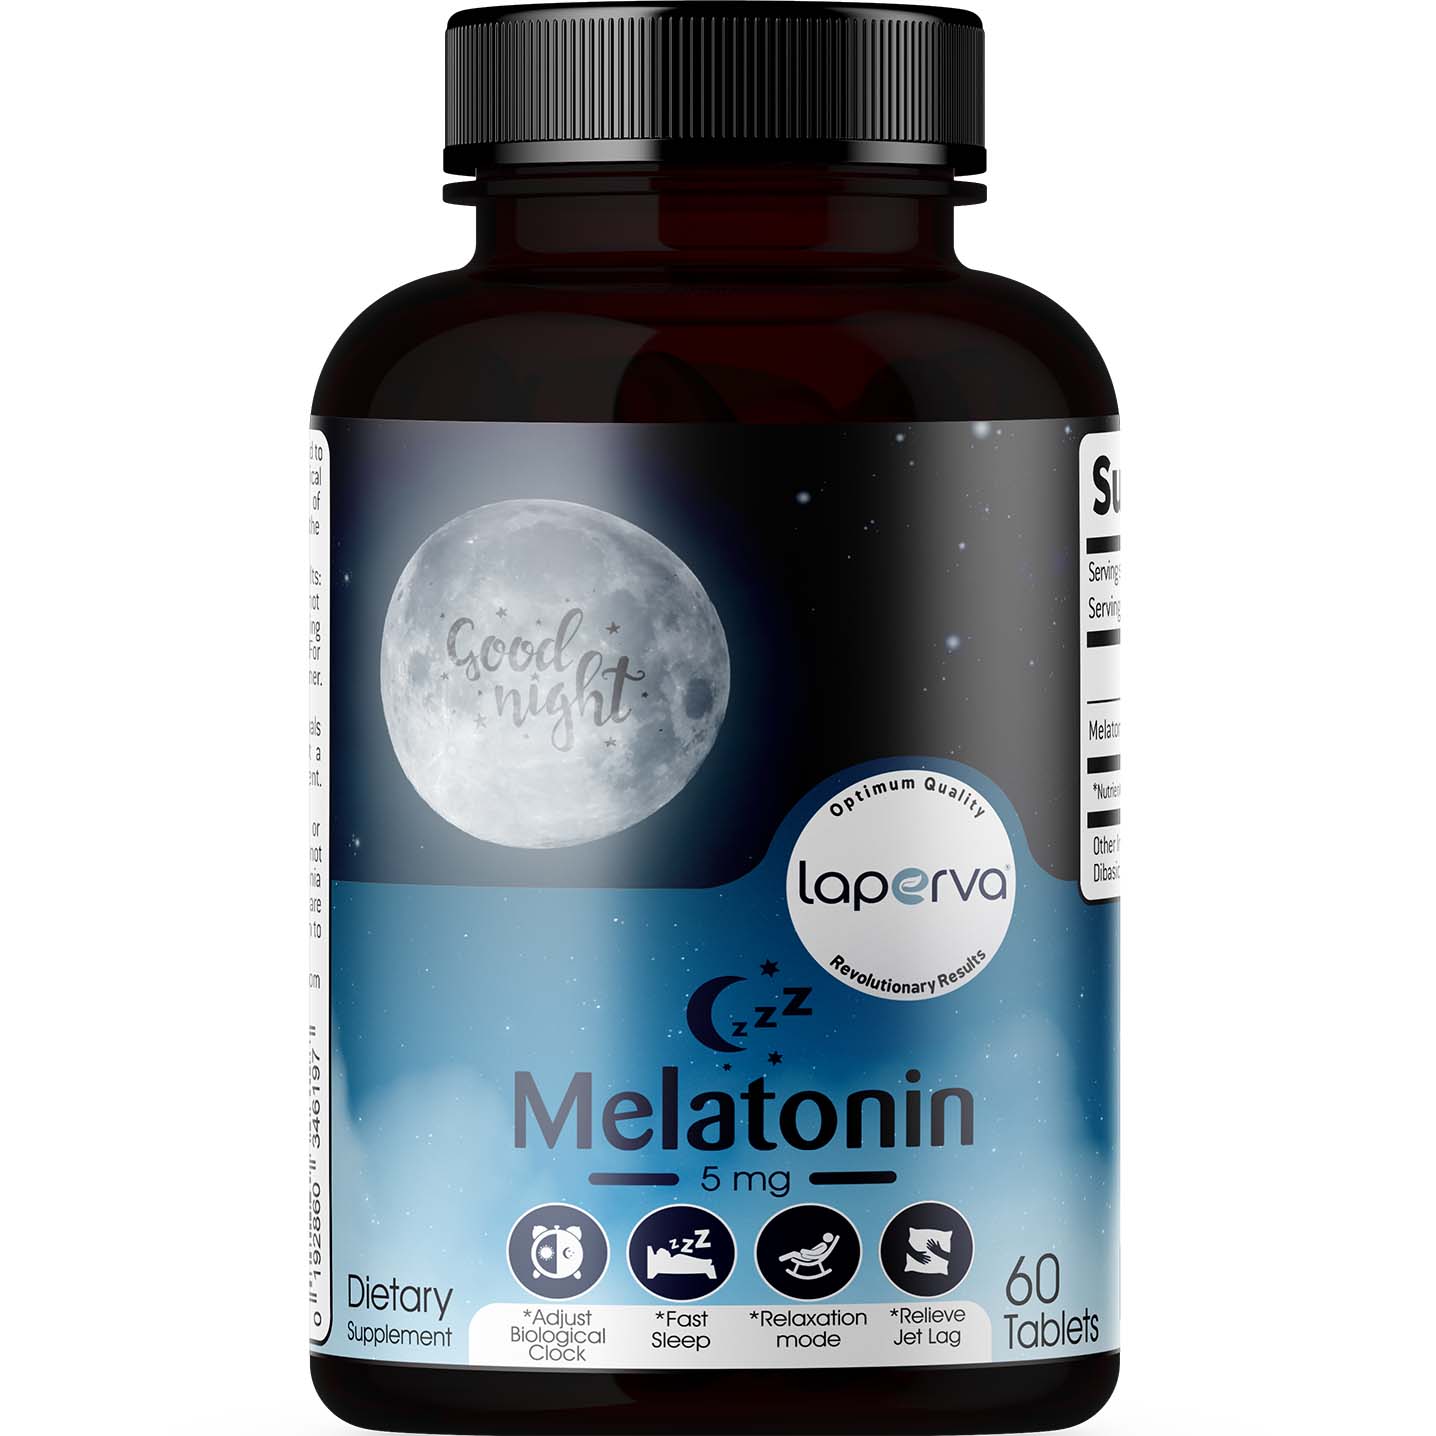 Laperva Melatonin 60 Tablets 5 mg